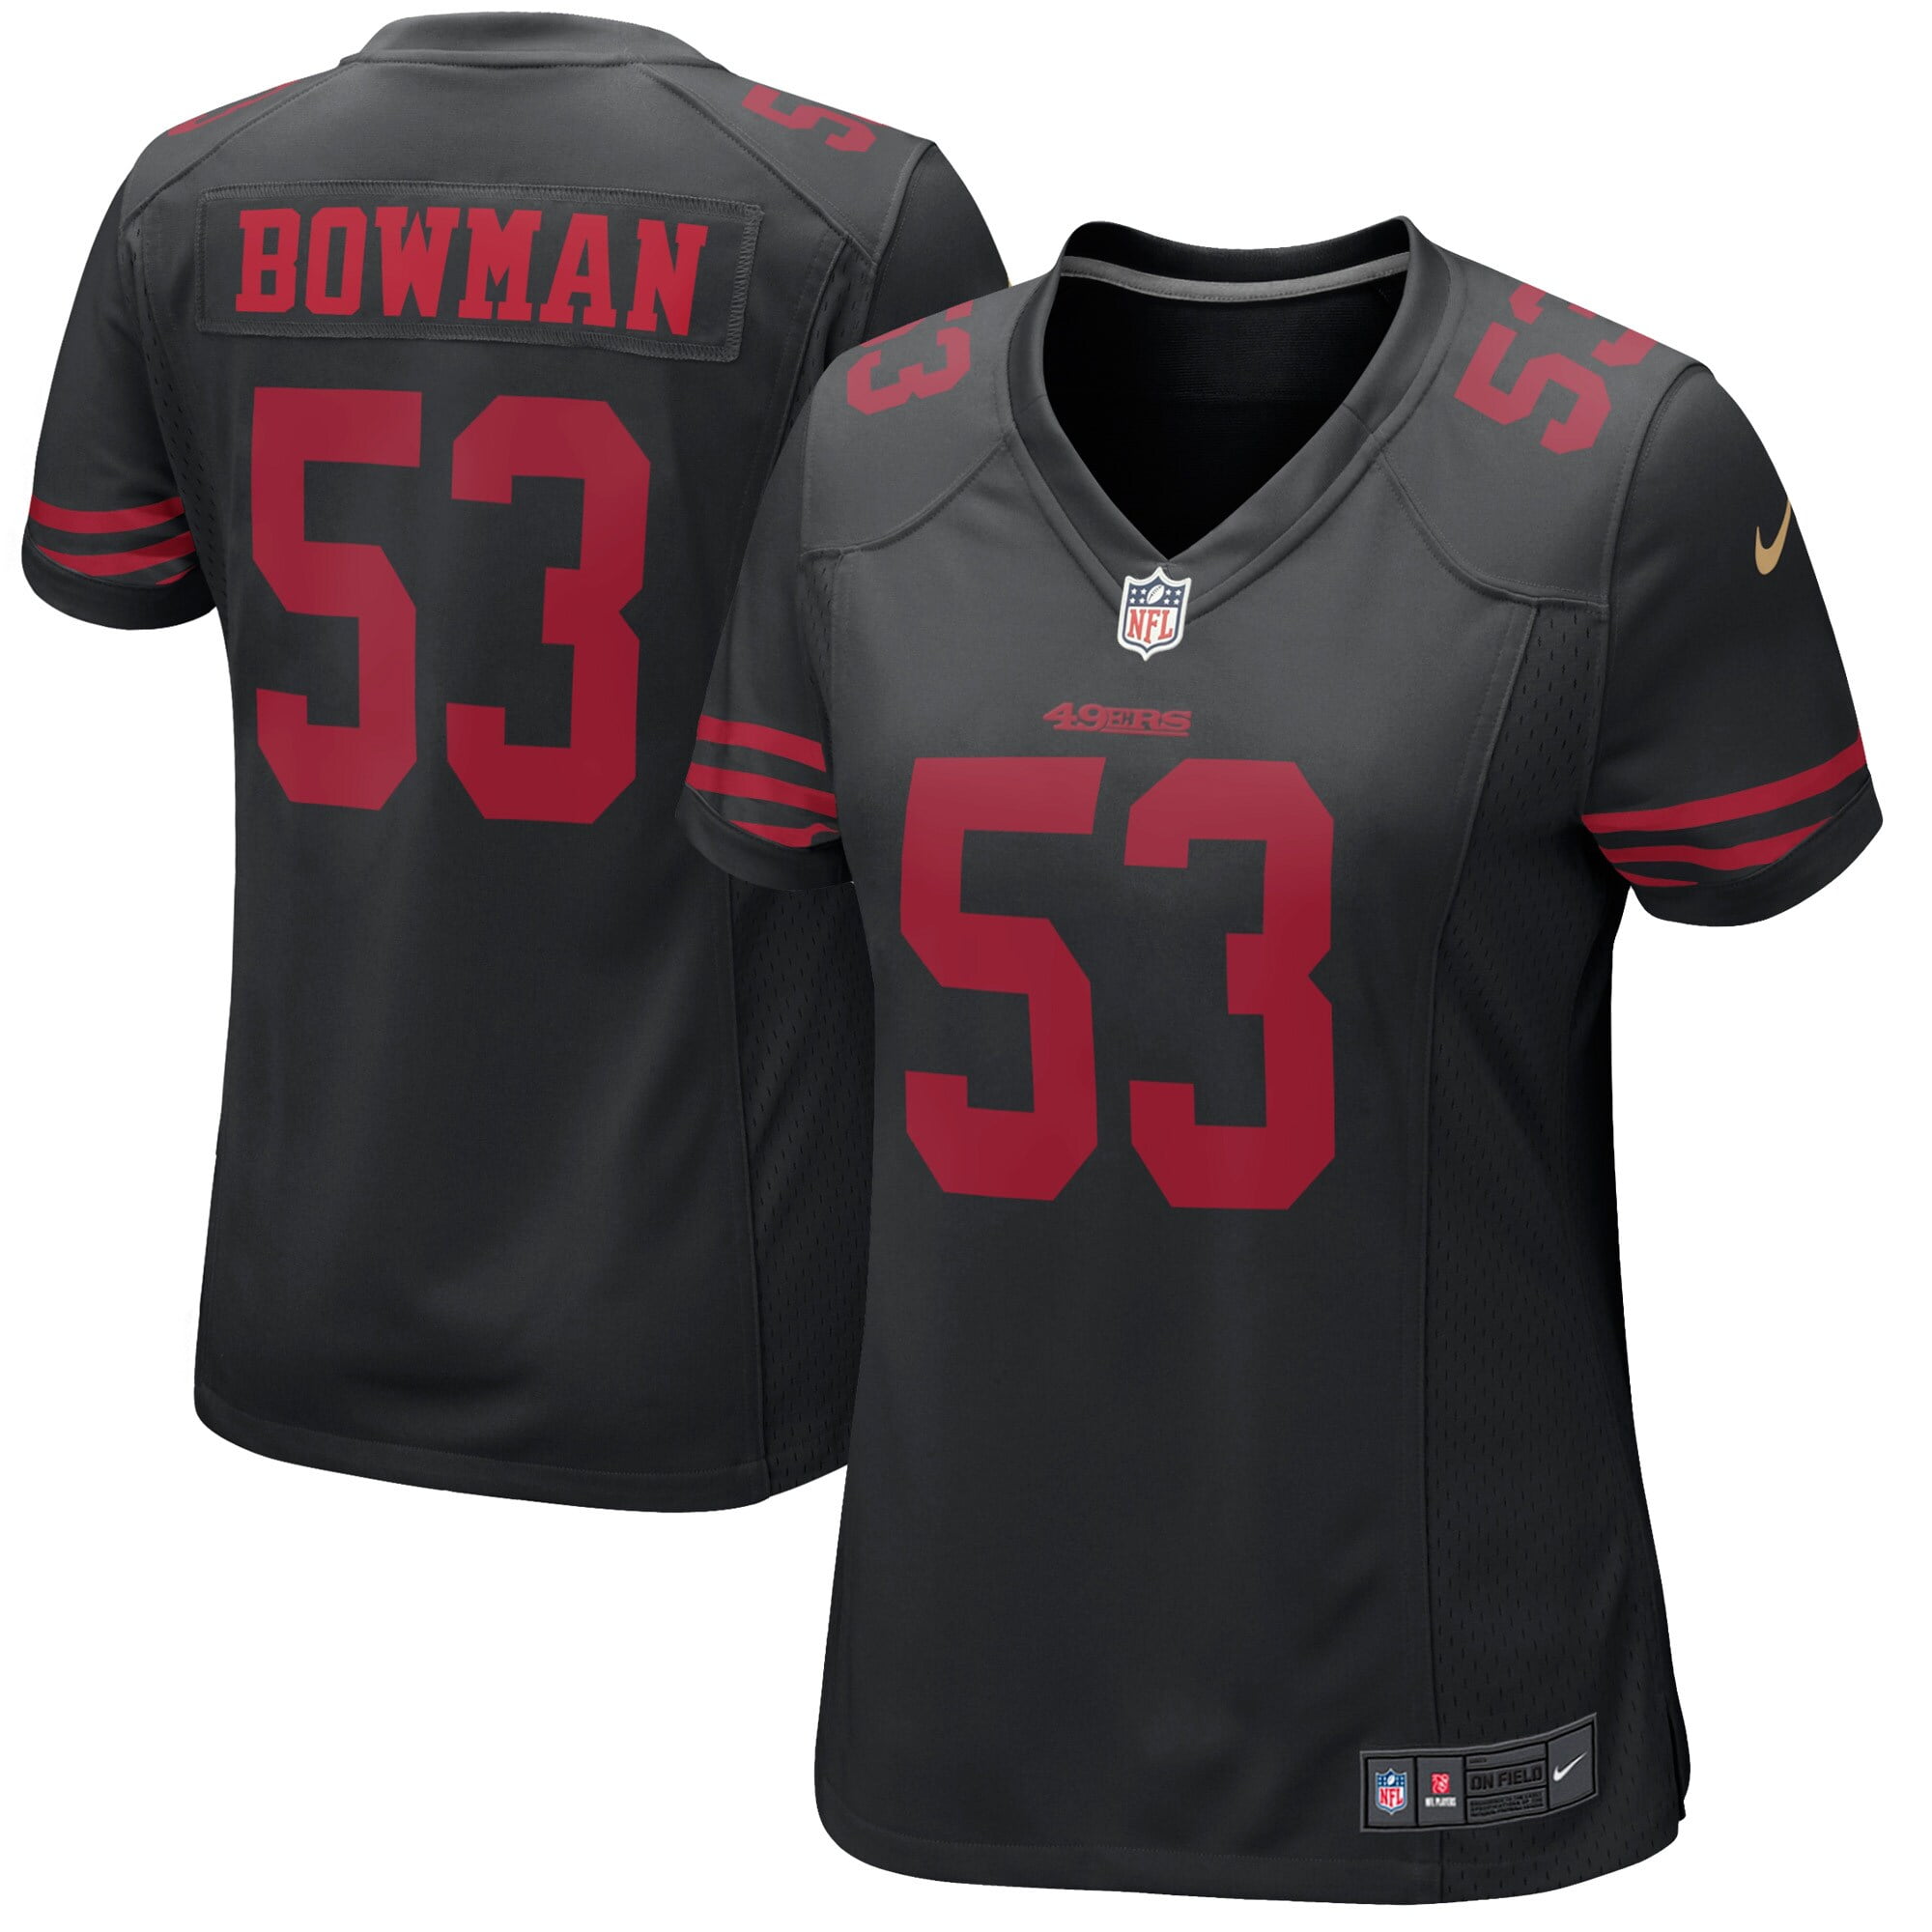 bowman 49ers jersey